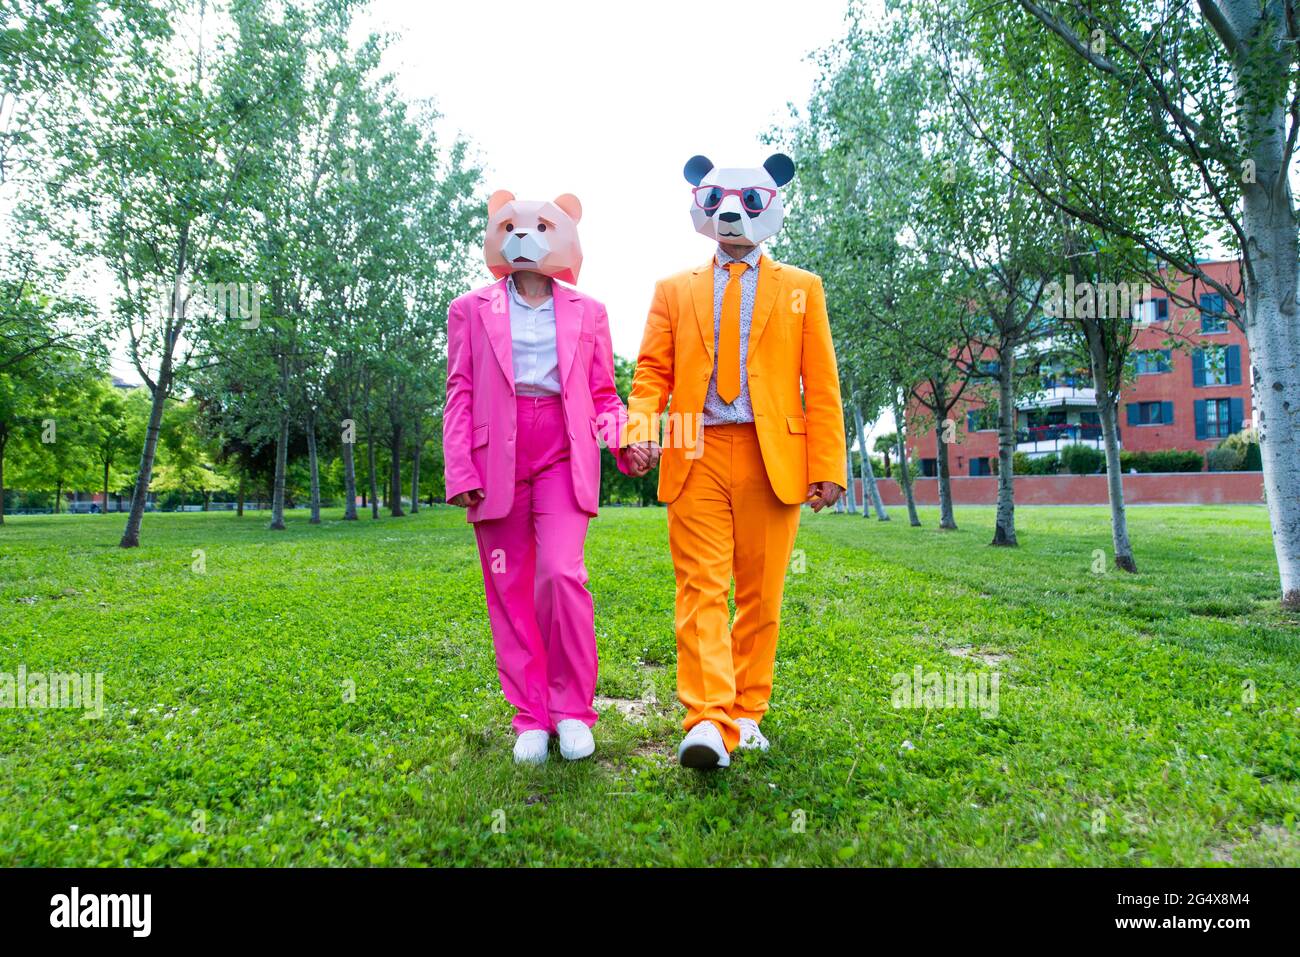 coupleÂ adulto indossa abiti vivaci e maschere animali che tengono le mani mentre cammina insieme nel parco verde Foto Stock